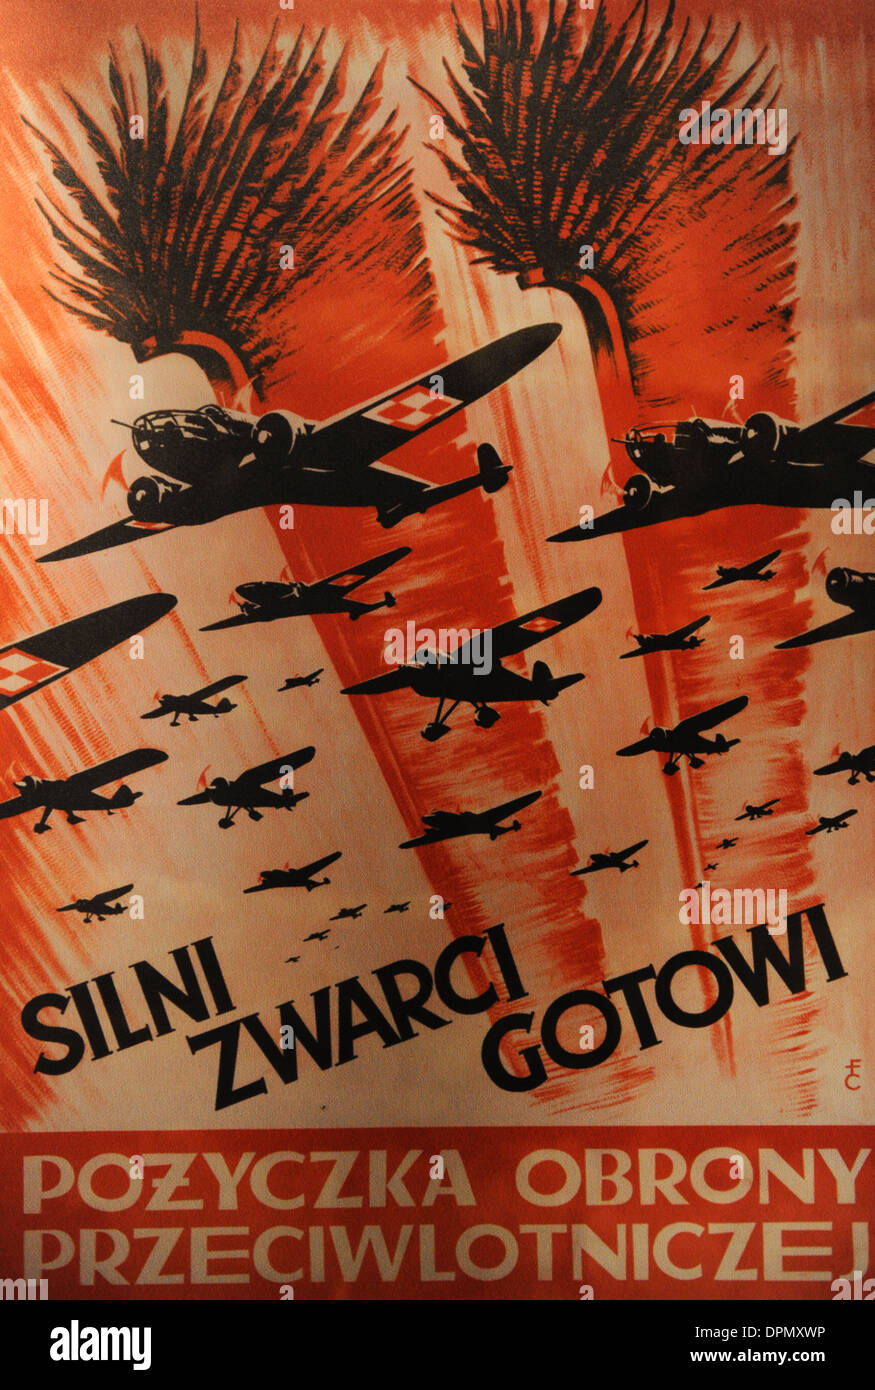 La seconda guerra mondiale. Poster di propaganda polacca della Air Force, 1939. Oskar Schlinder museo. Cracovia. La Polonia. Foto Stock